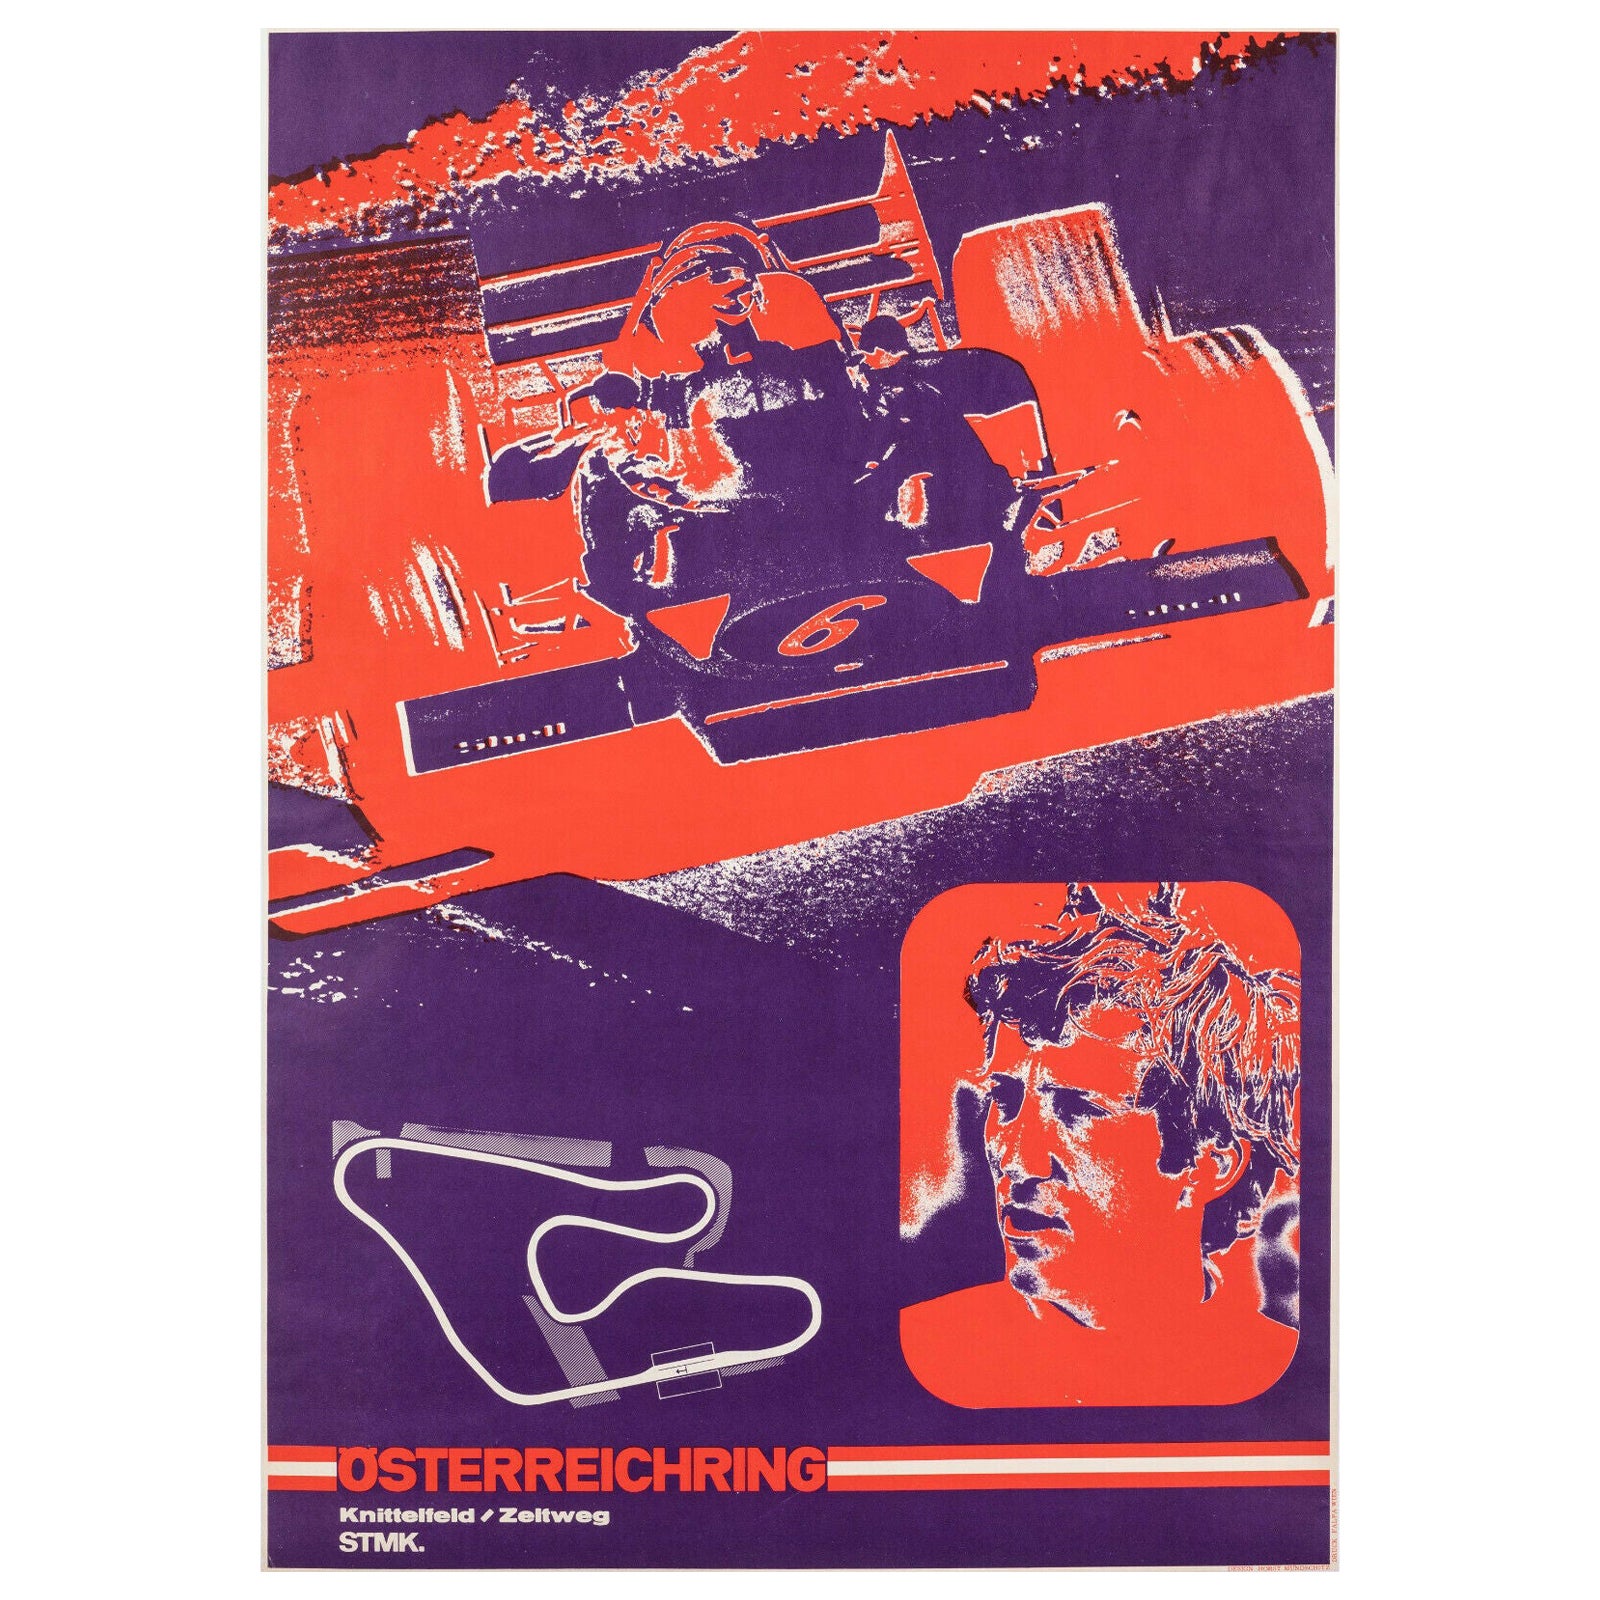 Original Vintage Poster-Österreichring-F1-Rennstrecke, ca. 1987